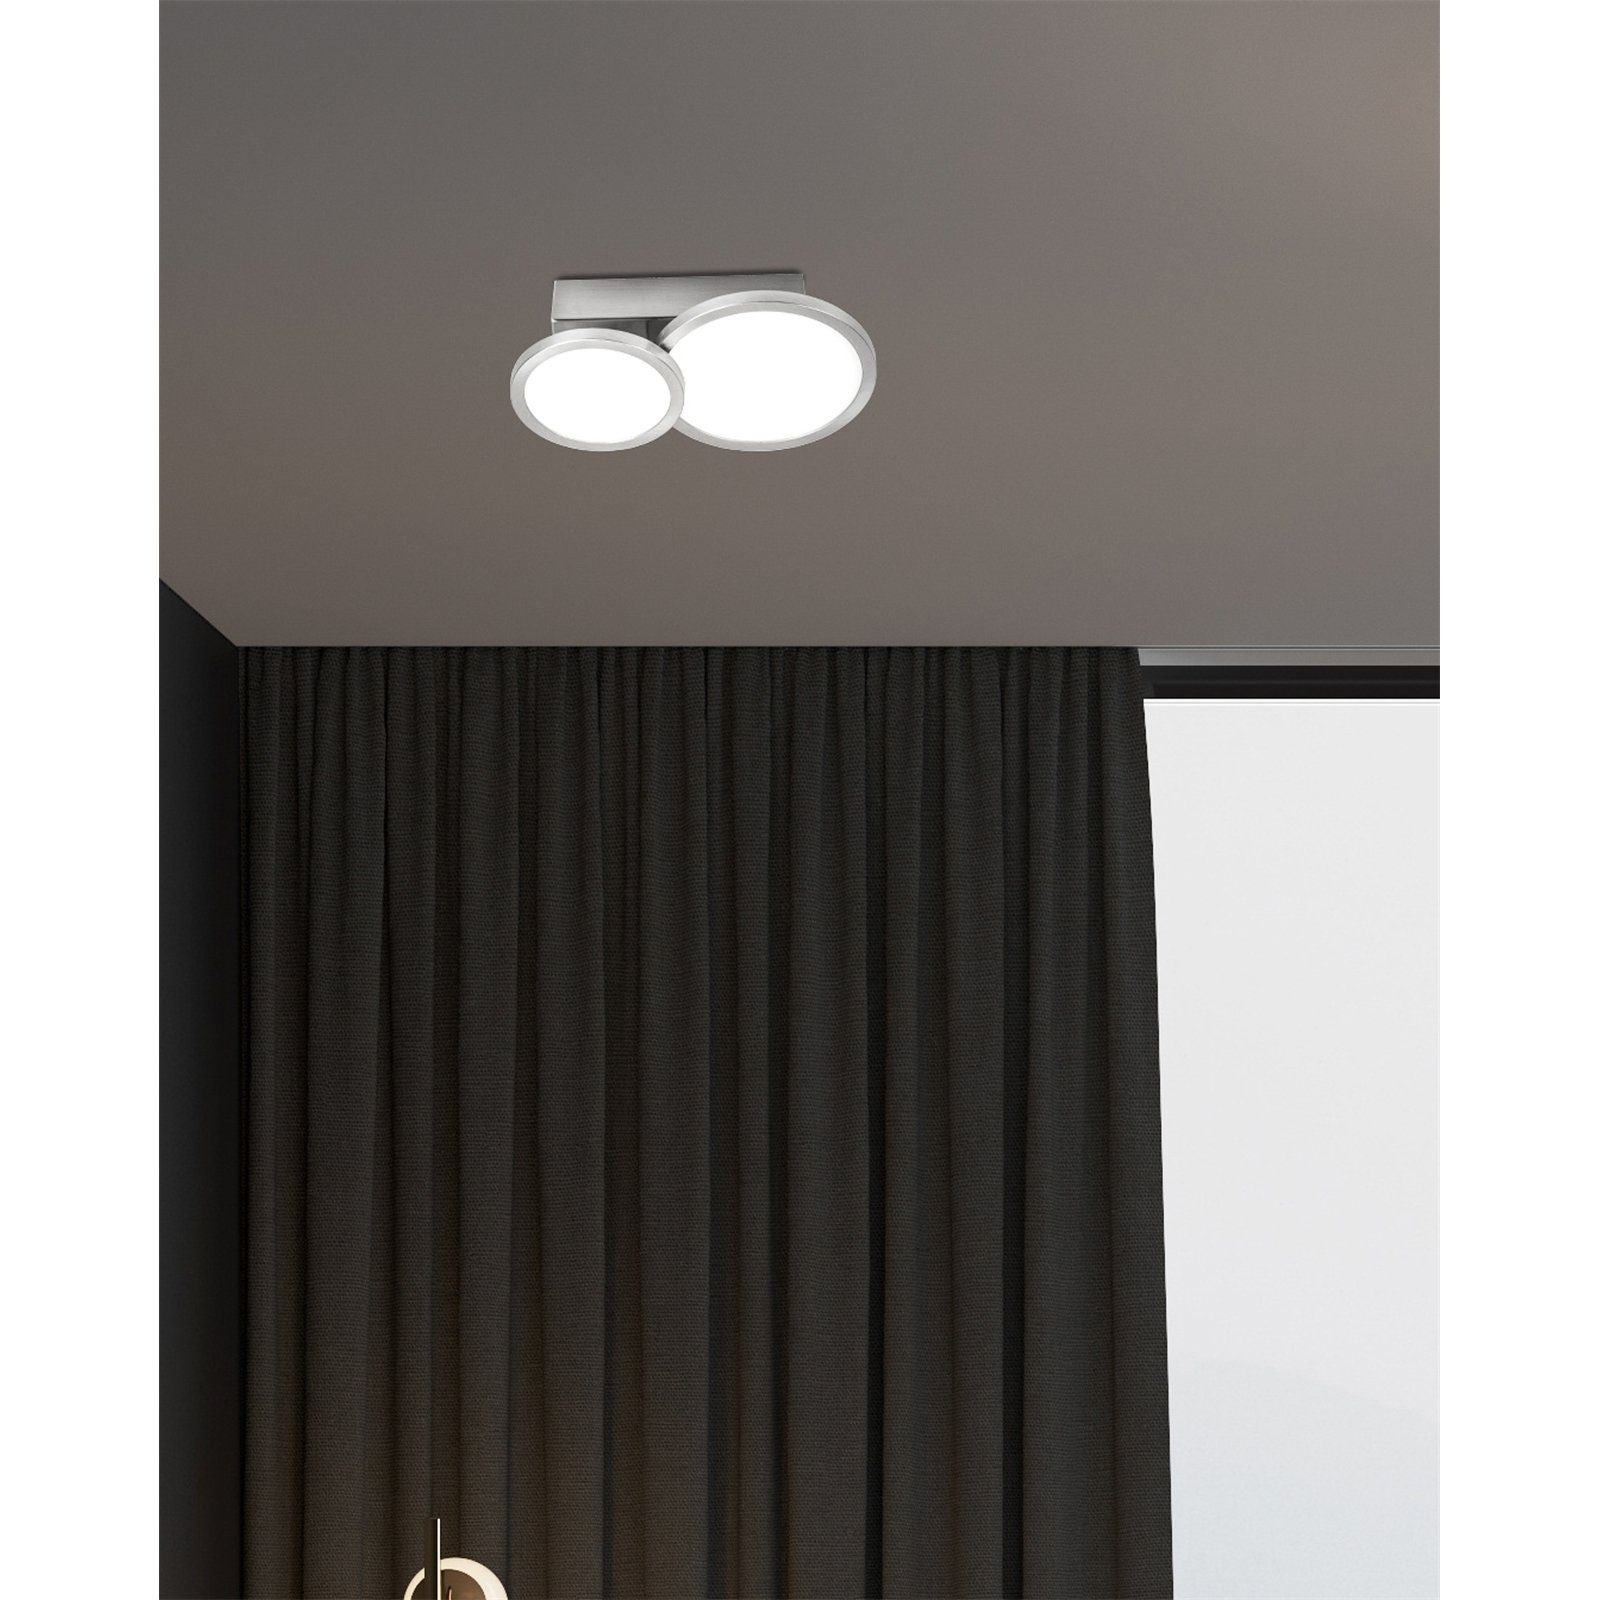 bmf-versand Nino Leuchten Deckenleuchte Deckenlampe LED, 2 NEO, flammig Deckenleuchte